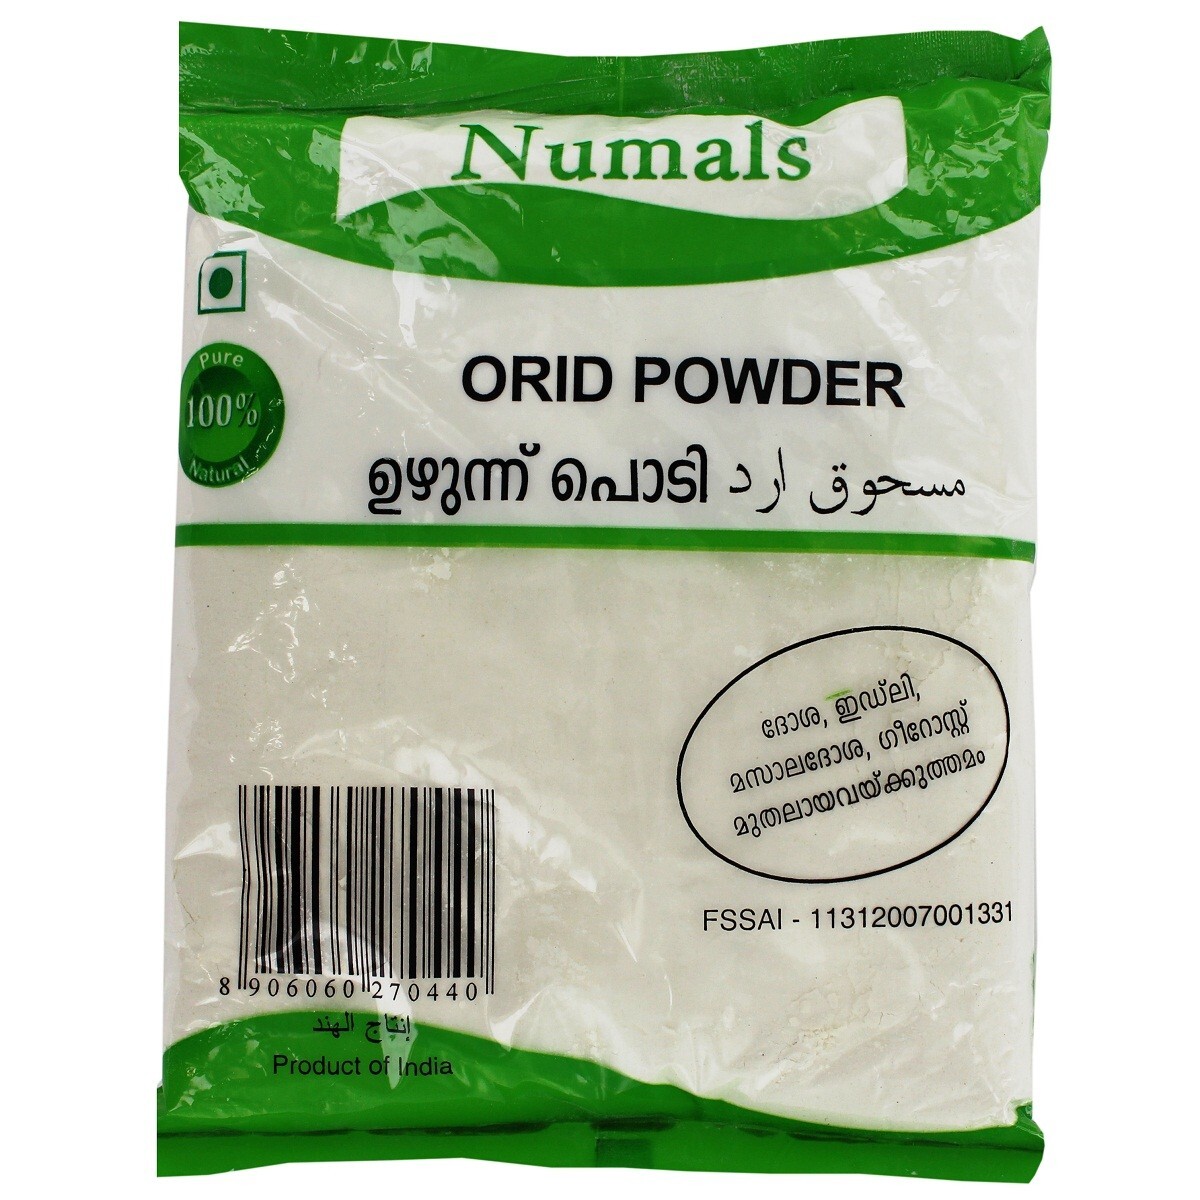 Numals Orid Powder 400g